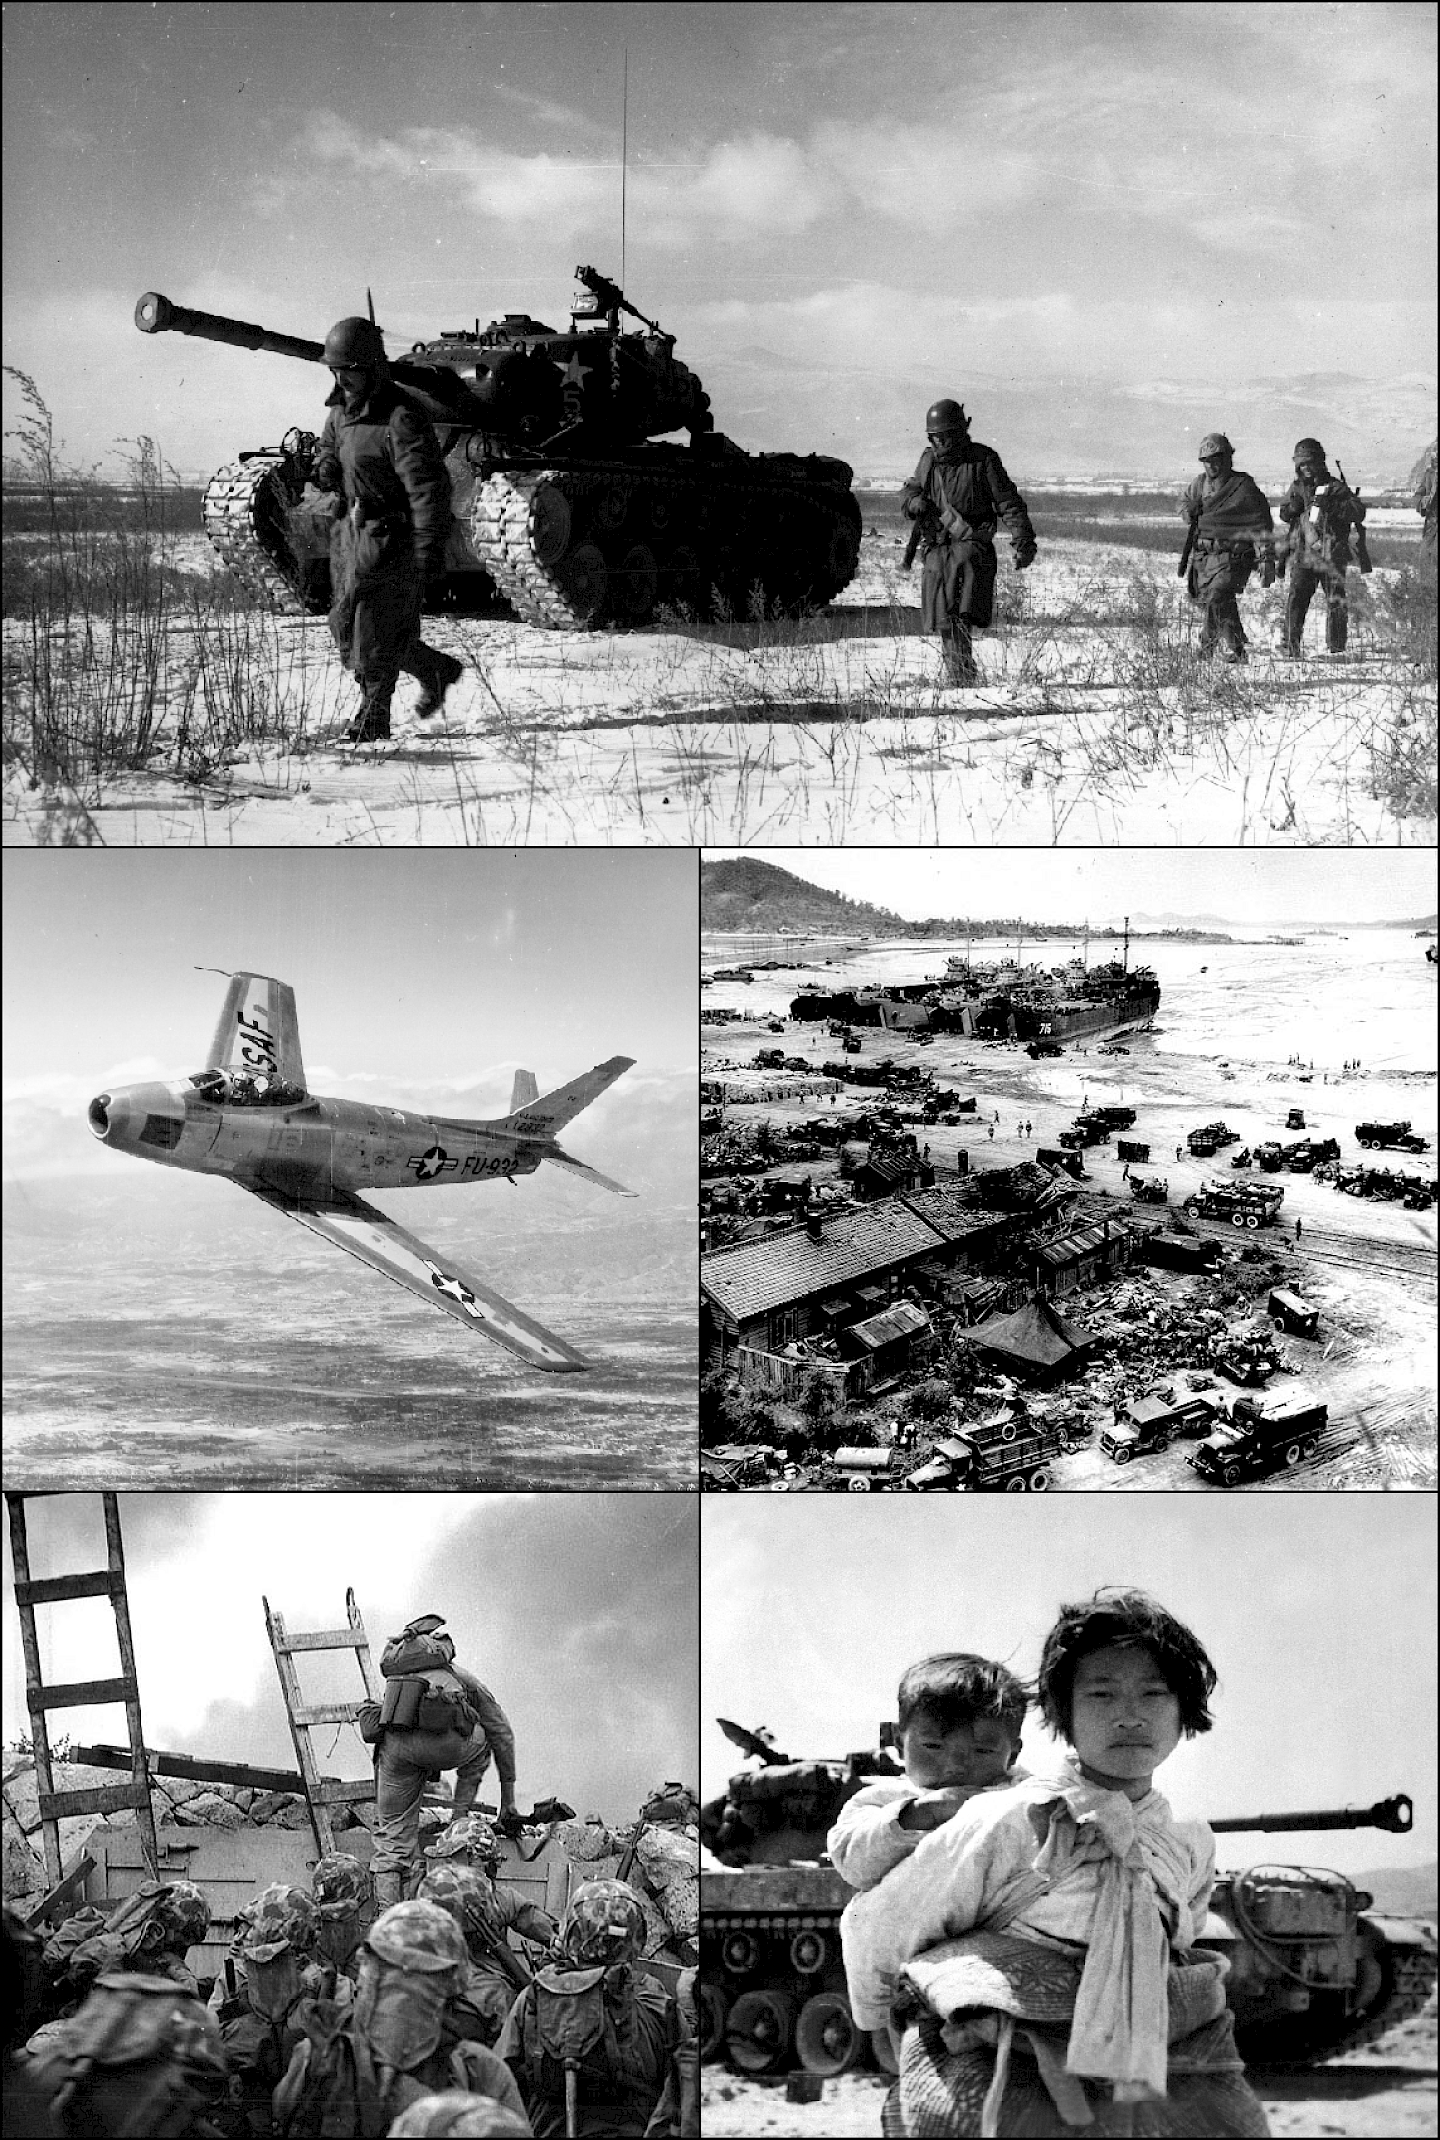 Der Korea-Krieg 1950-53: Kontext, Verlauf, Auswirkungen